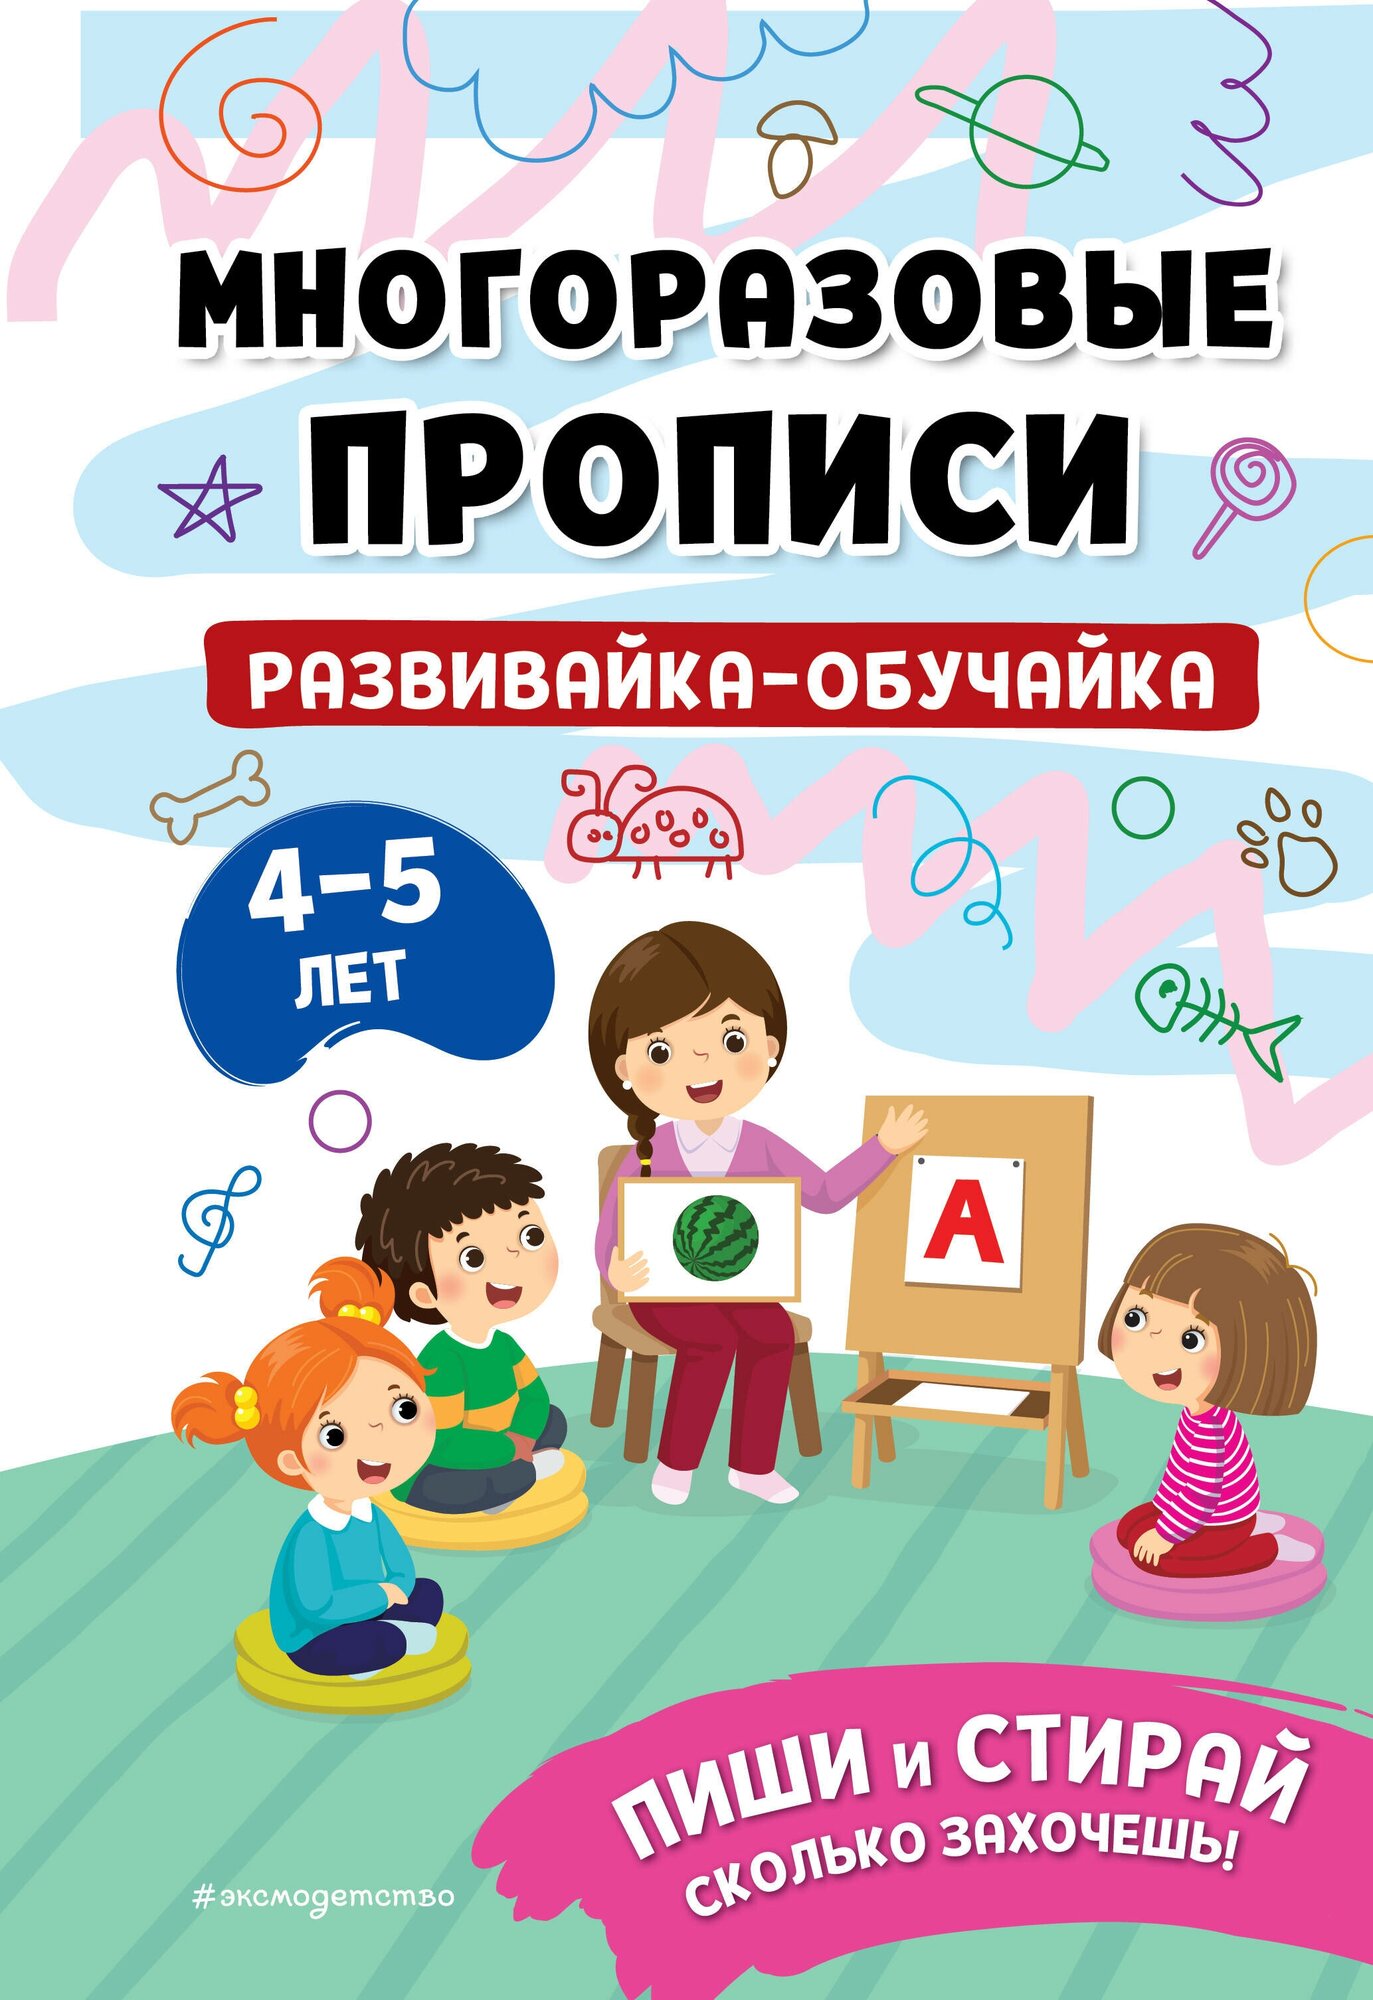 Развивайка-обучайка для детей 4-5 лет - фото №1